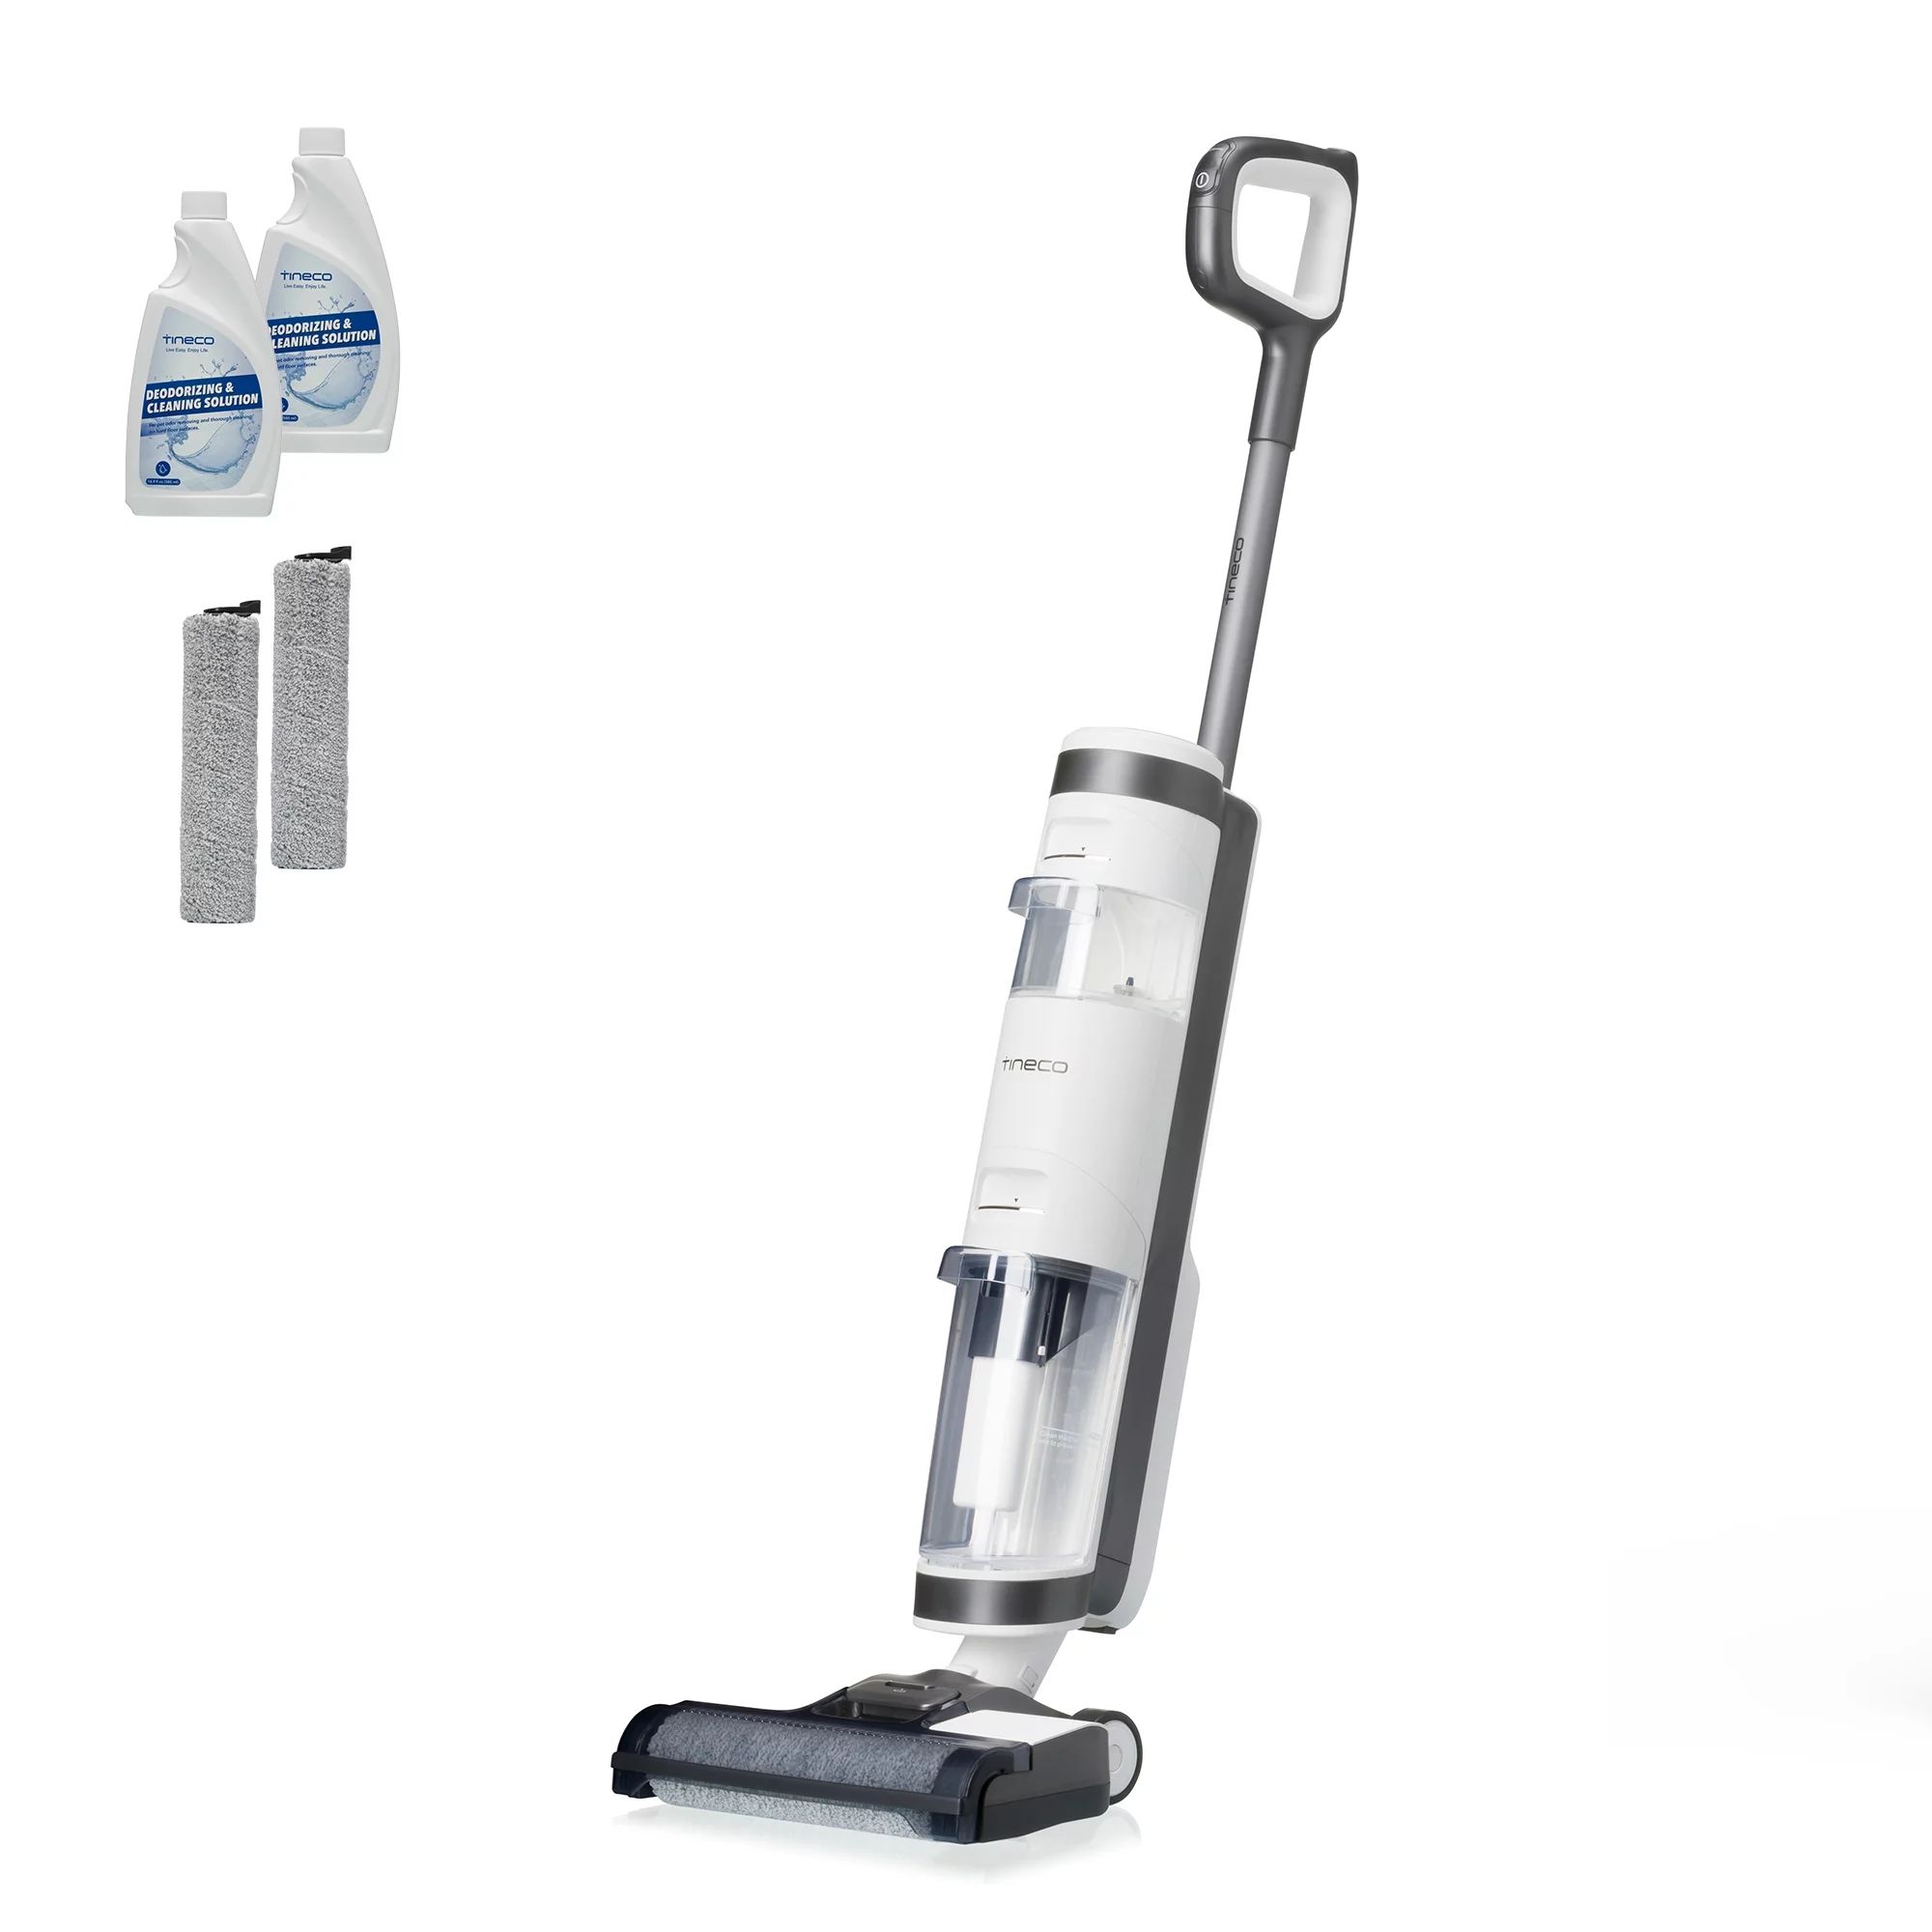 Tineco iFloor 3 Complete Wet/Dry Cordless Stick Vacuum - White | Walmart (US)